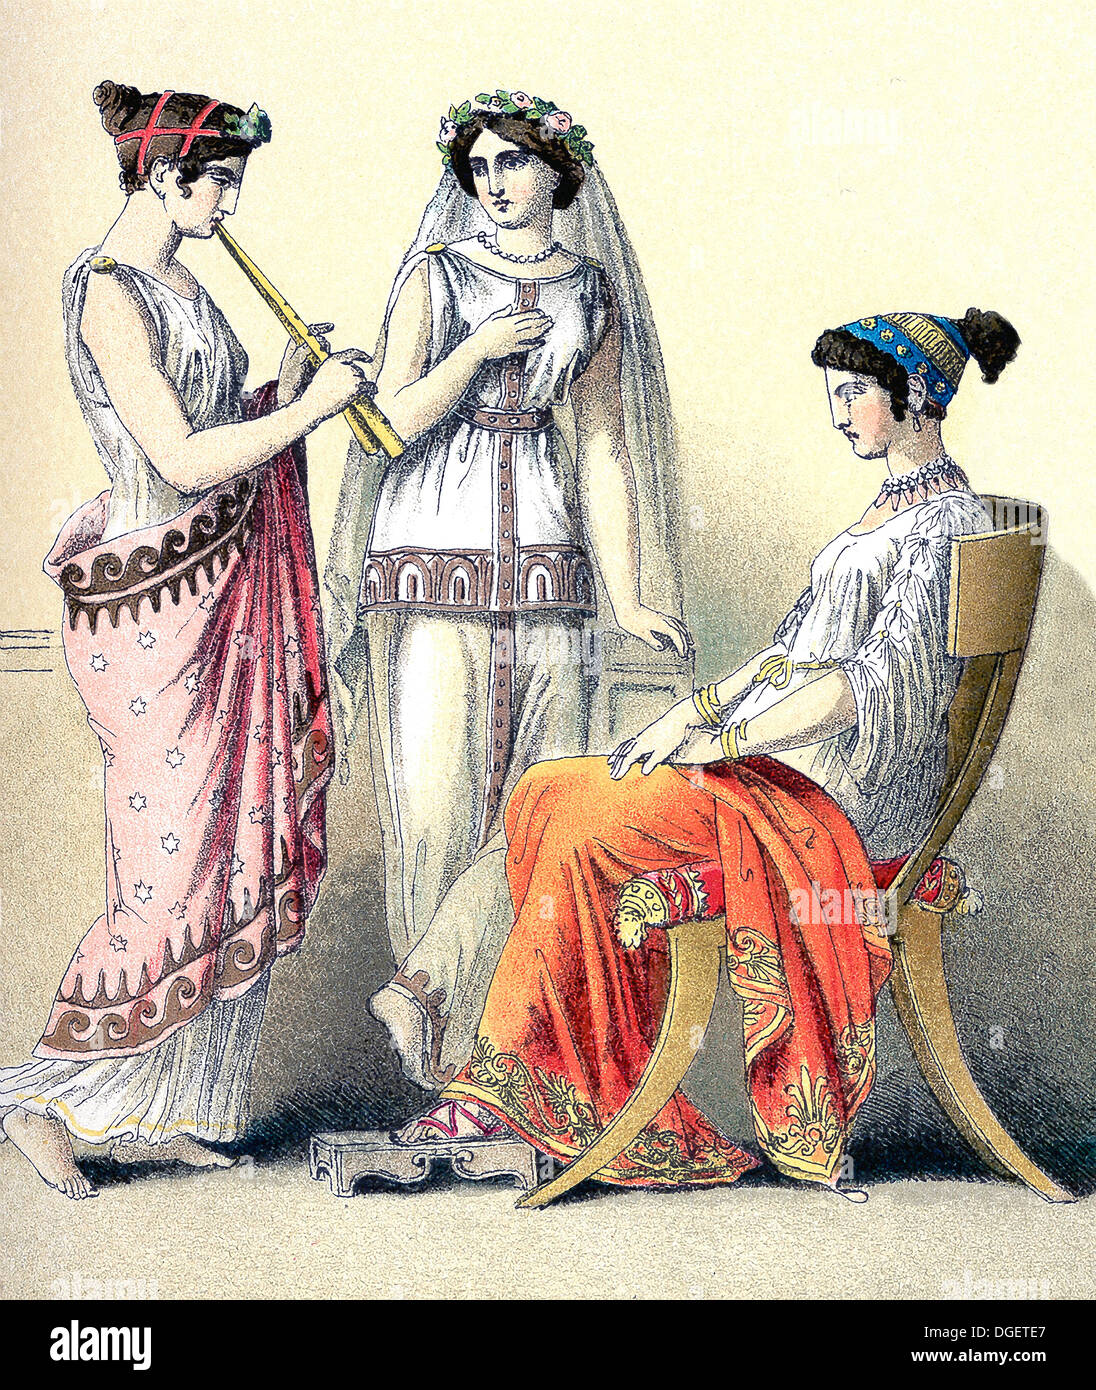 Les illustrations montrent les femmes grecques, de gauche à droite : le joueur de flûte et deux femmes de la classe supérieure. Banque D'Images